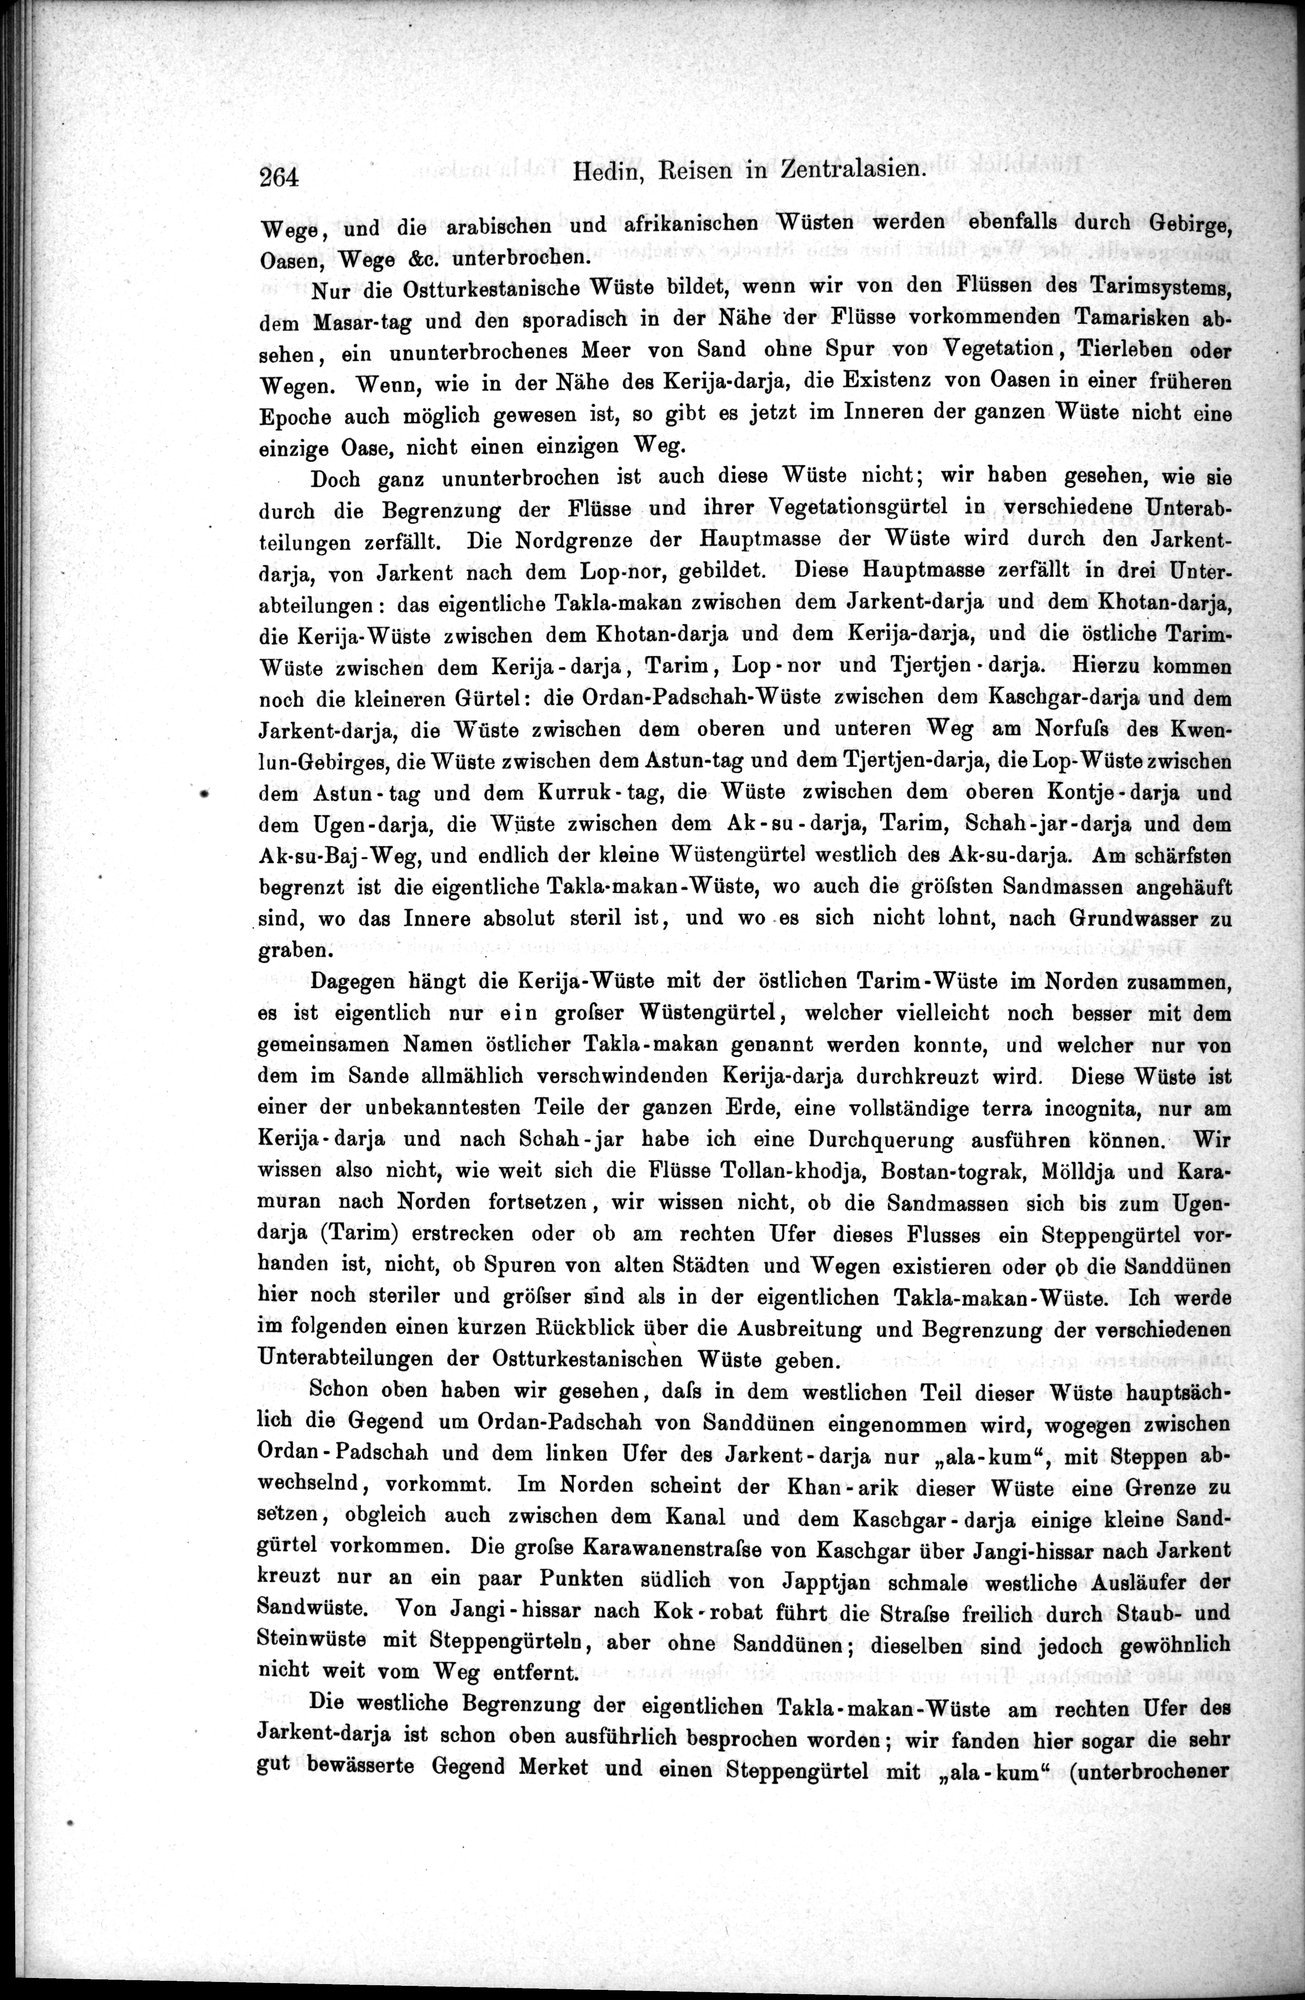 Die Geographische-Wissenschaftlichen Ergebnisse meiner Reisen in Zentralasien, 1894-1897 : vol.1 / Page 276 (Grayscale High Resolution Image)